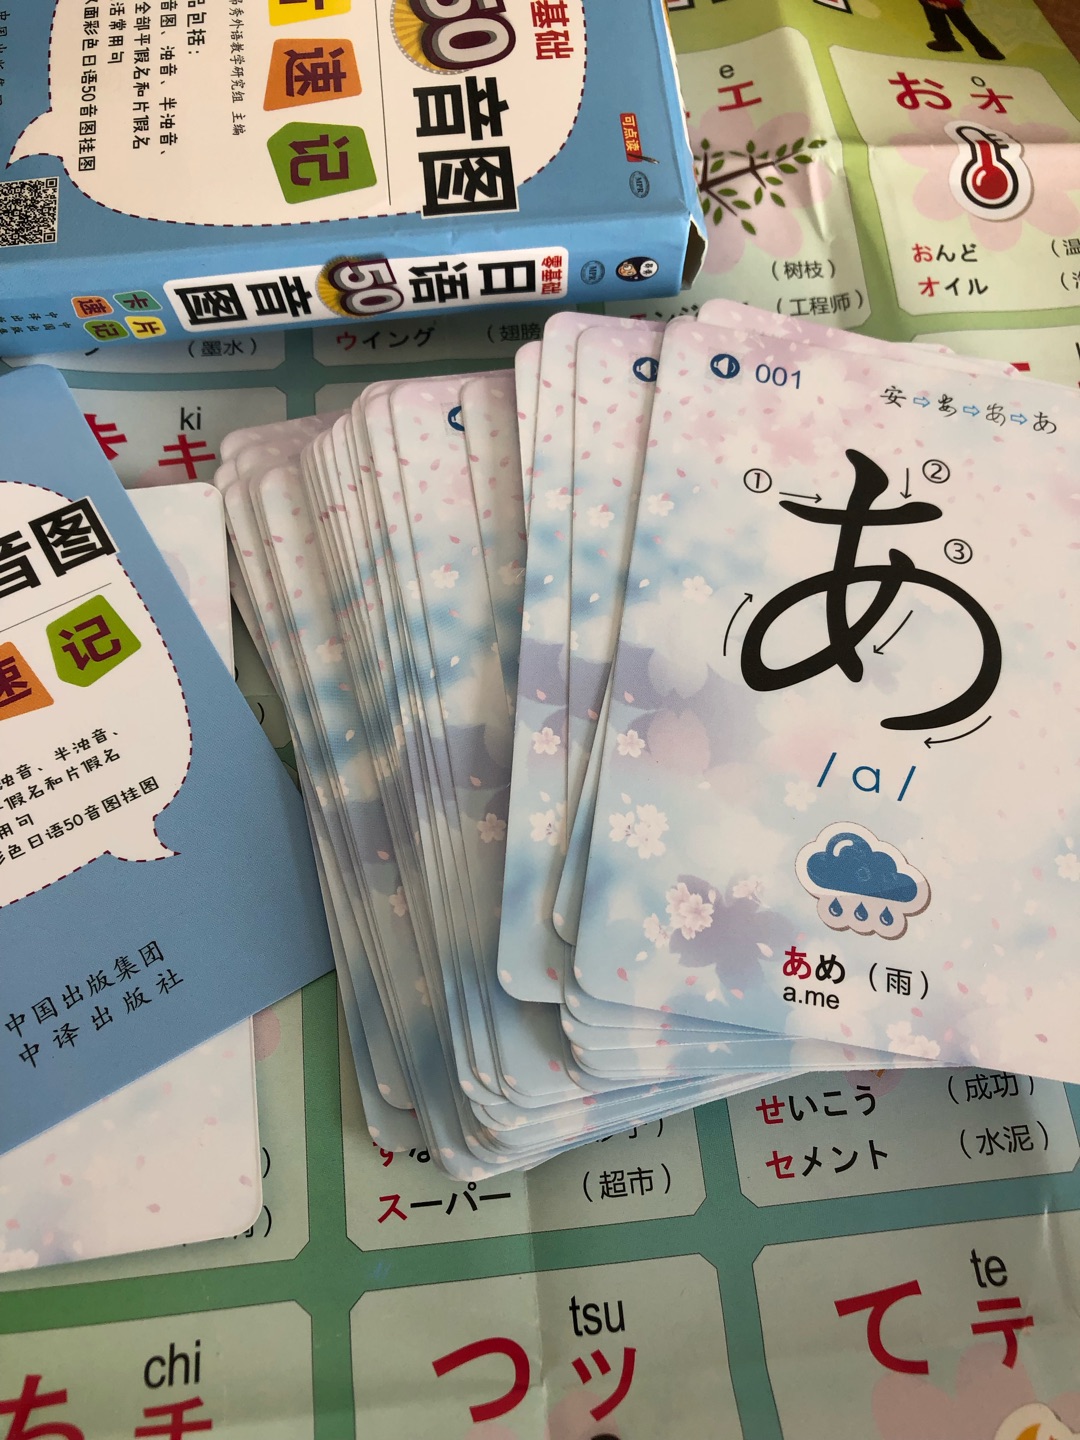 学日语必备材料，这样很便于记忆，五十音图是日语的基础，学好就不怕日语日后有多难记忆了，特别喜欢的小卡片，配送也很快，态度好，很满意的一次购物！